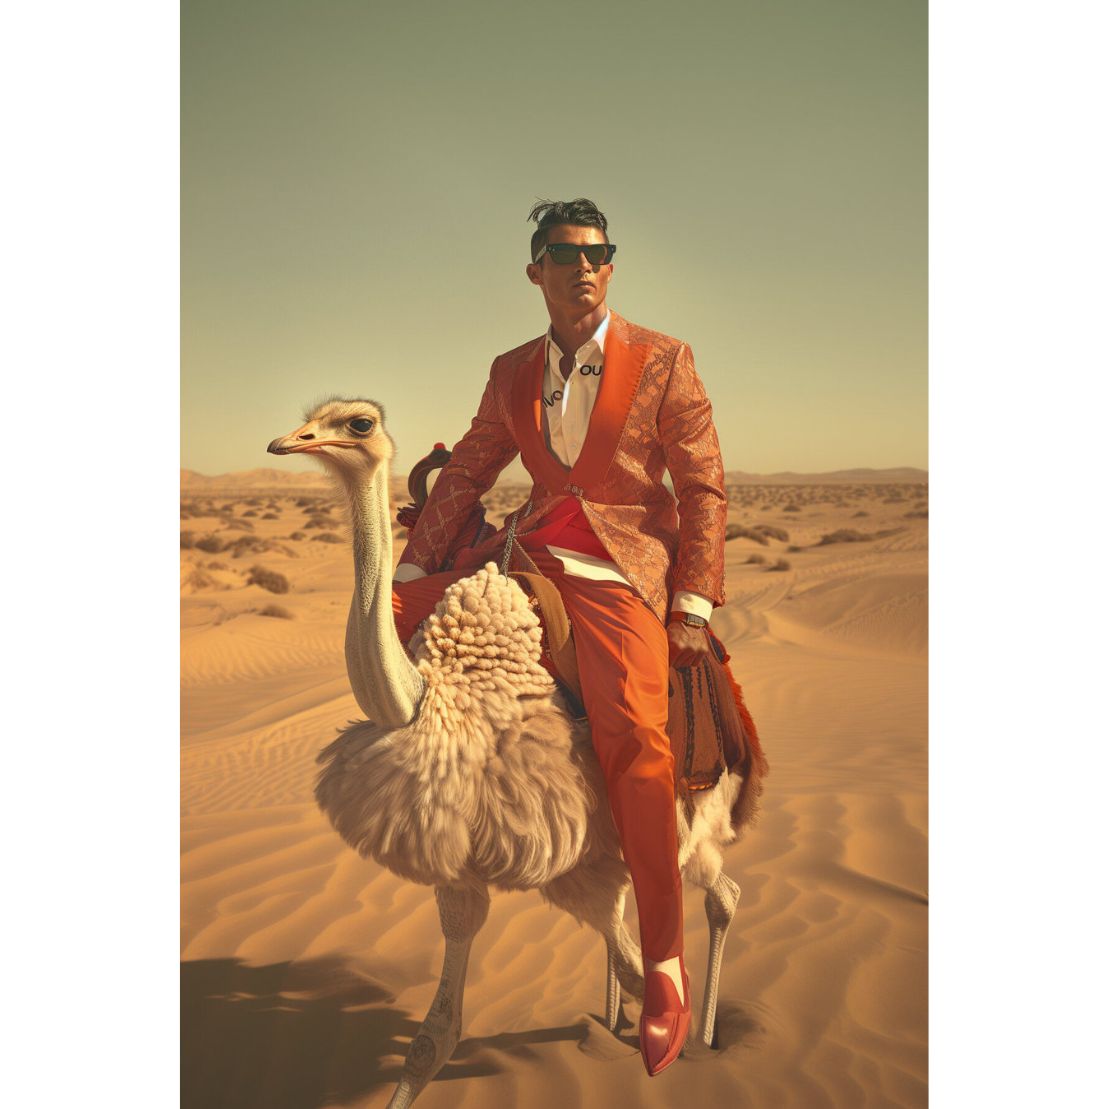 Cristiano riding the ostrich